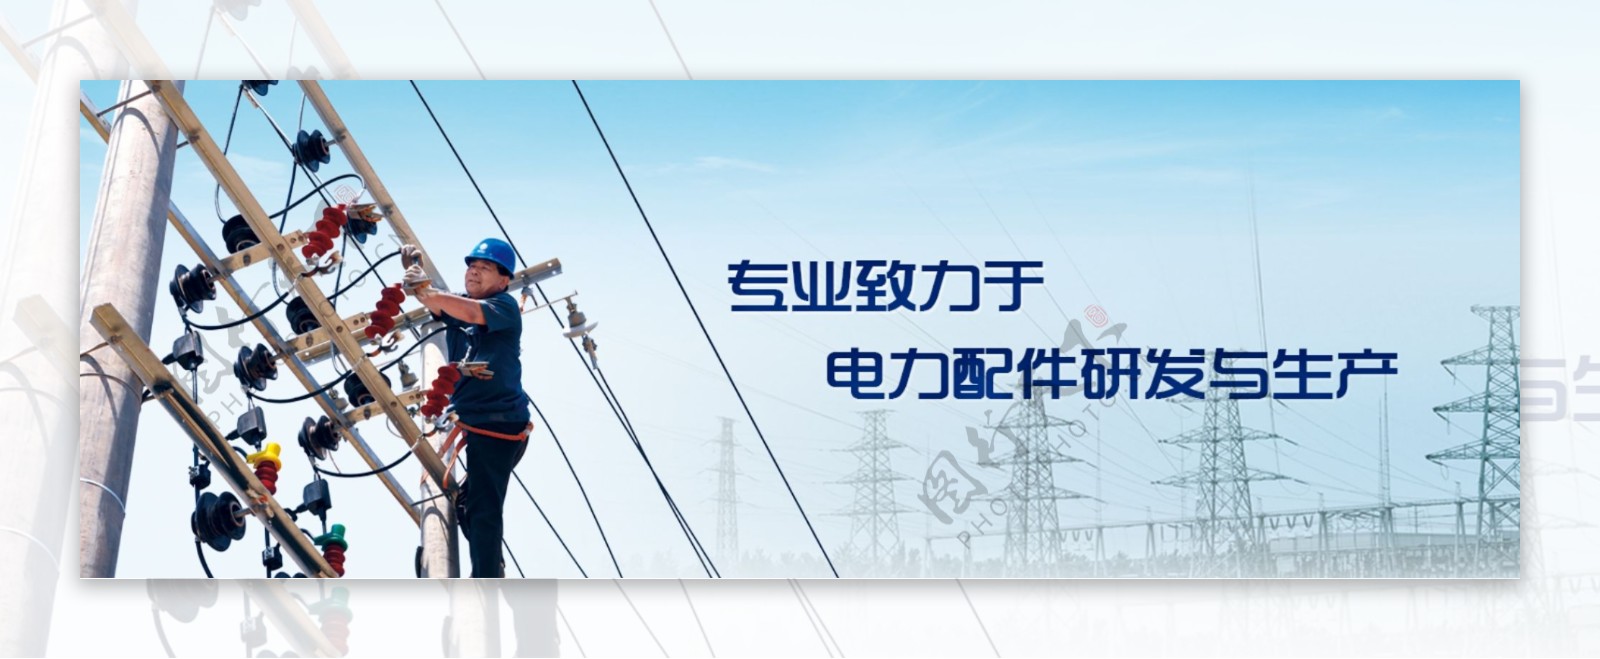 电力公司网站banner